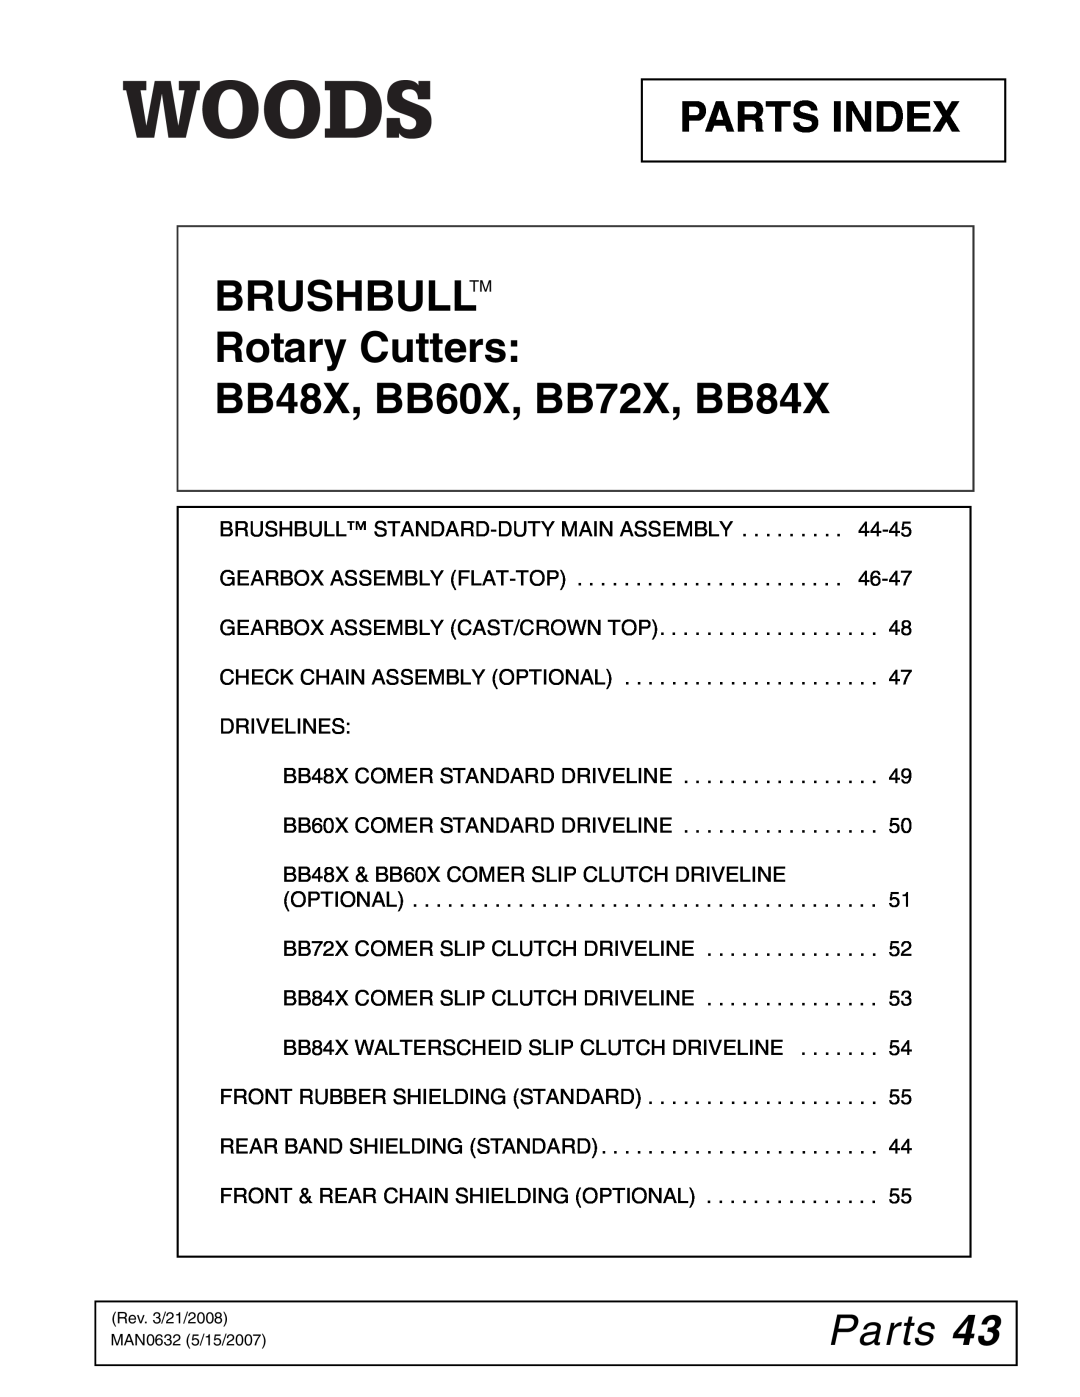 Woods Equipment manual Parts, PARTS INDEX BRUSHBULLTM Rotary Cutters, BB48X, BB60X, BB72X, BB84X 